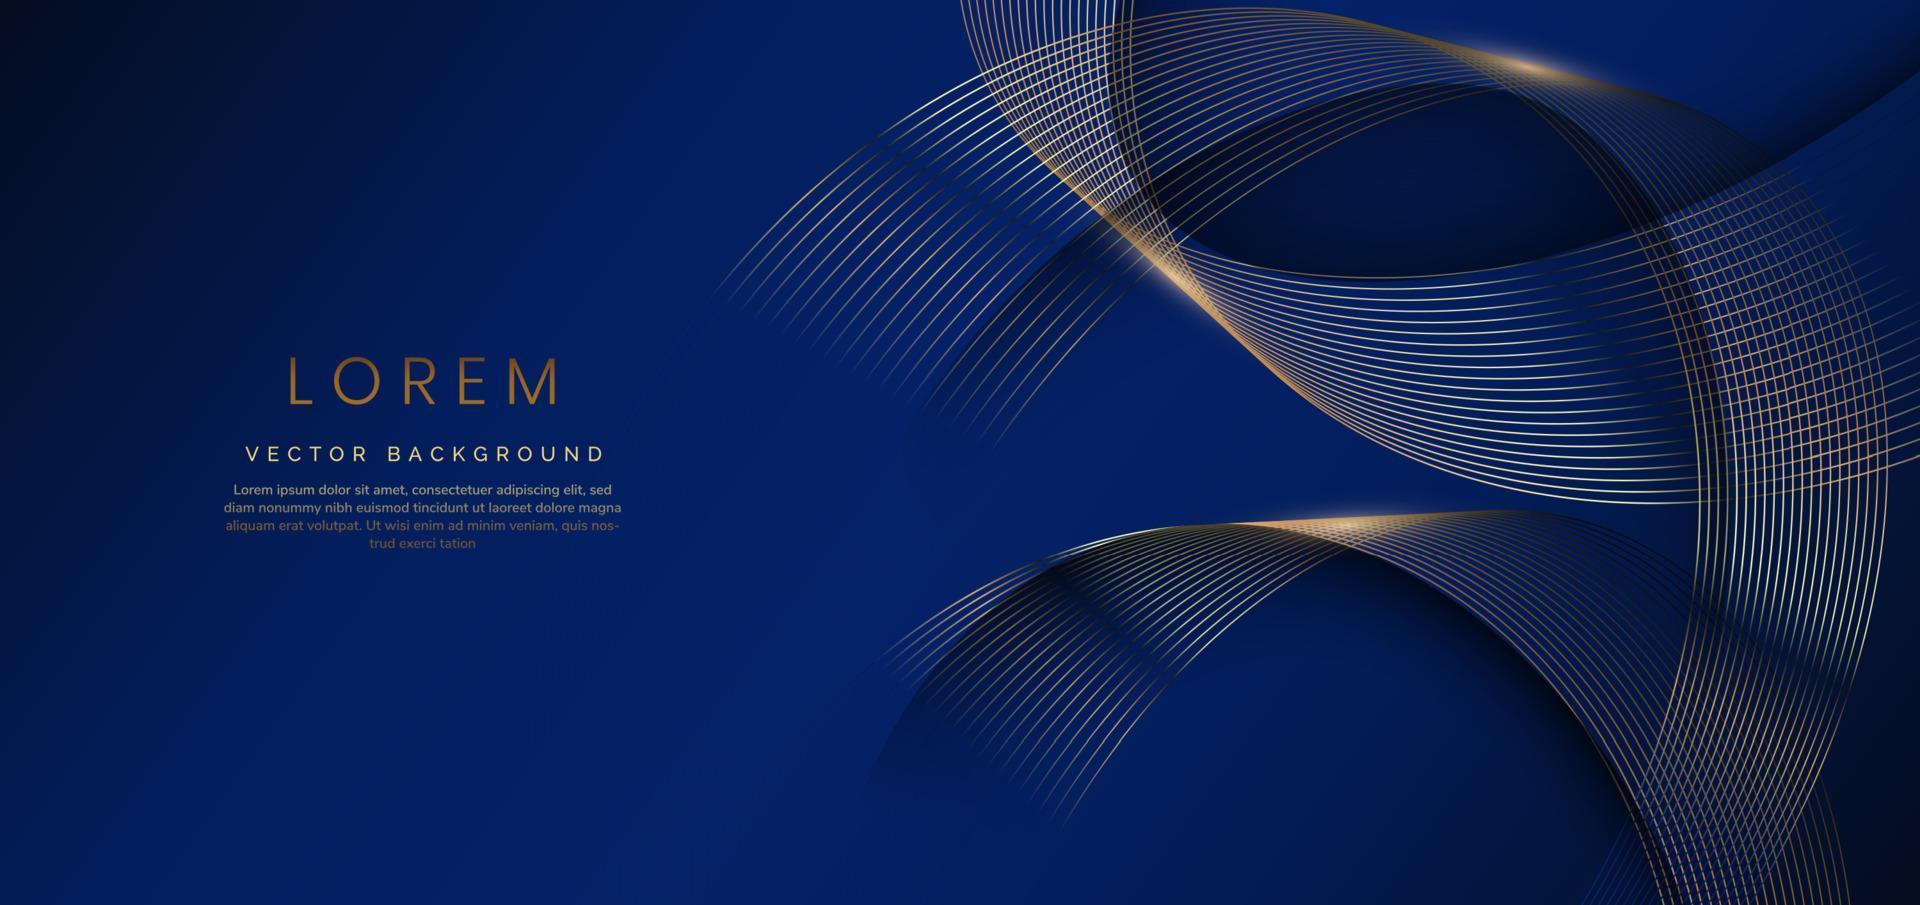 Abstrakte goldene Luxuslinien, die sich auf dunkelblauem Hintergrund überlappen. Vorlage Premium-Award-Design. Vektor-Illustration vektor